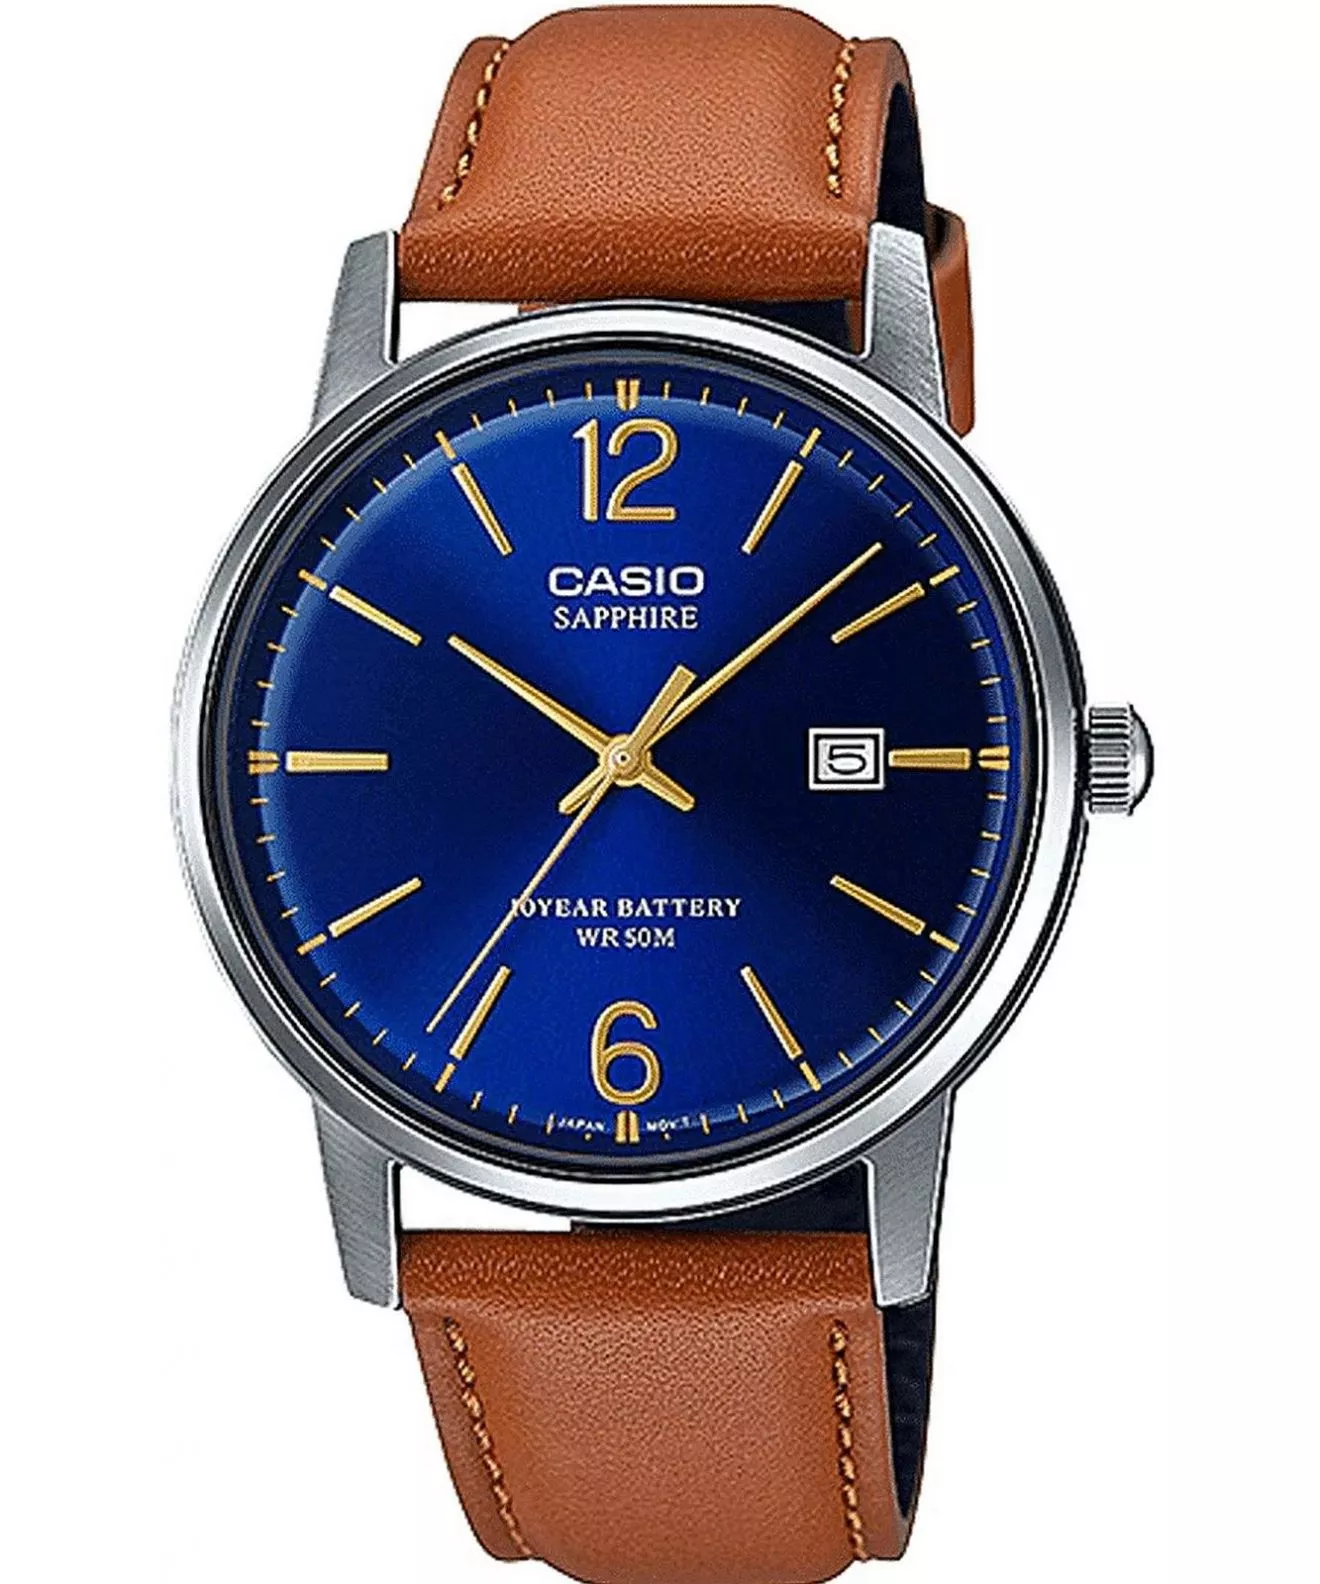 Casio Classic Men's Watch MTS-110L-2AVEF